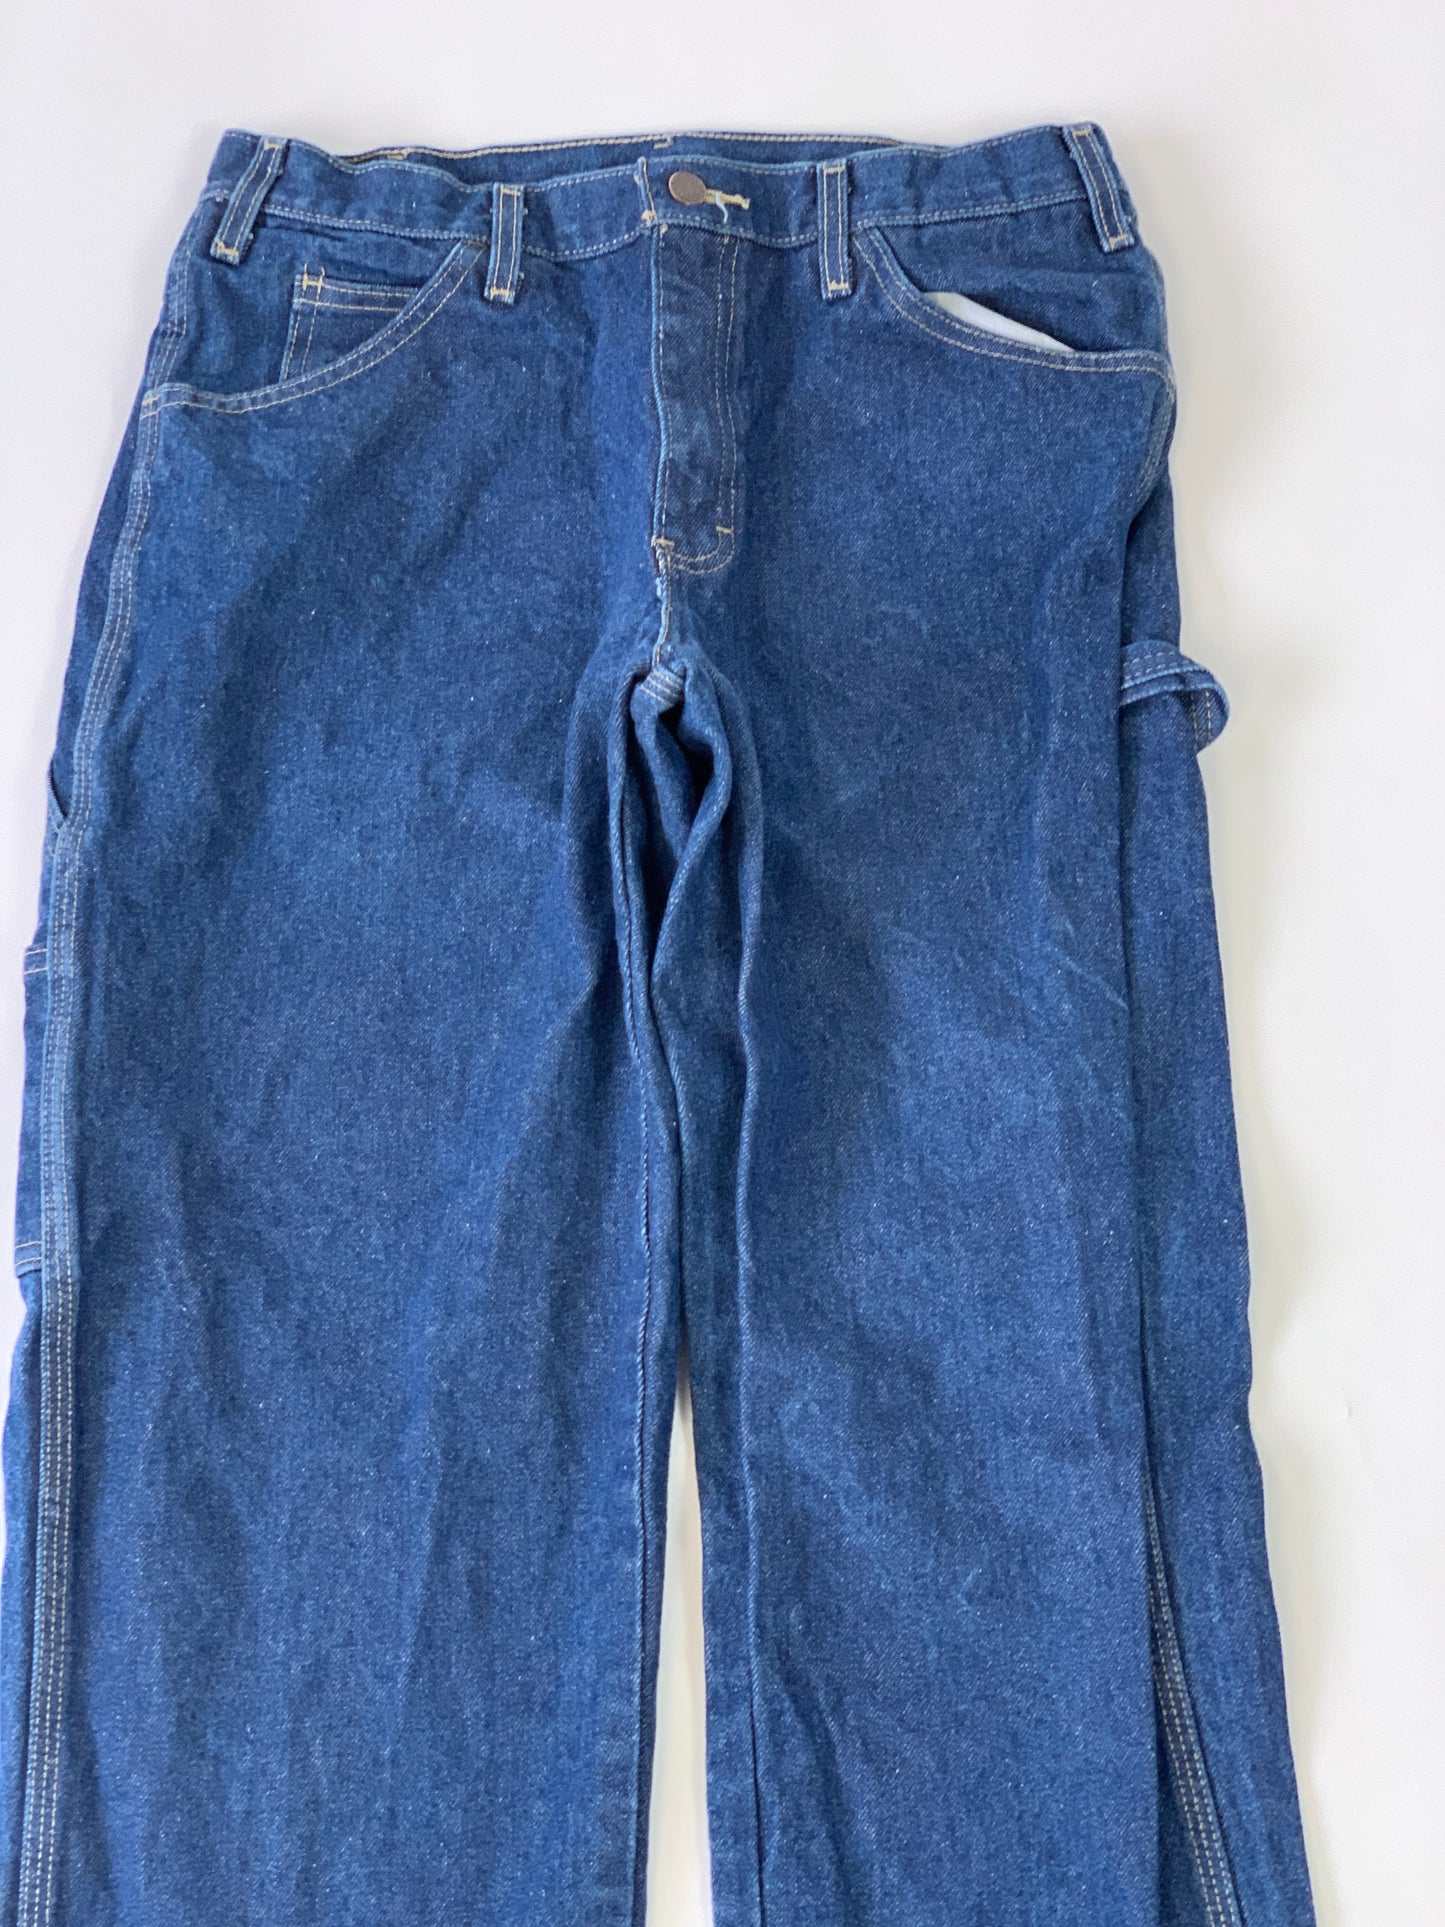 Dickies Carpenter Vintage Jeans - 33